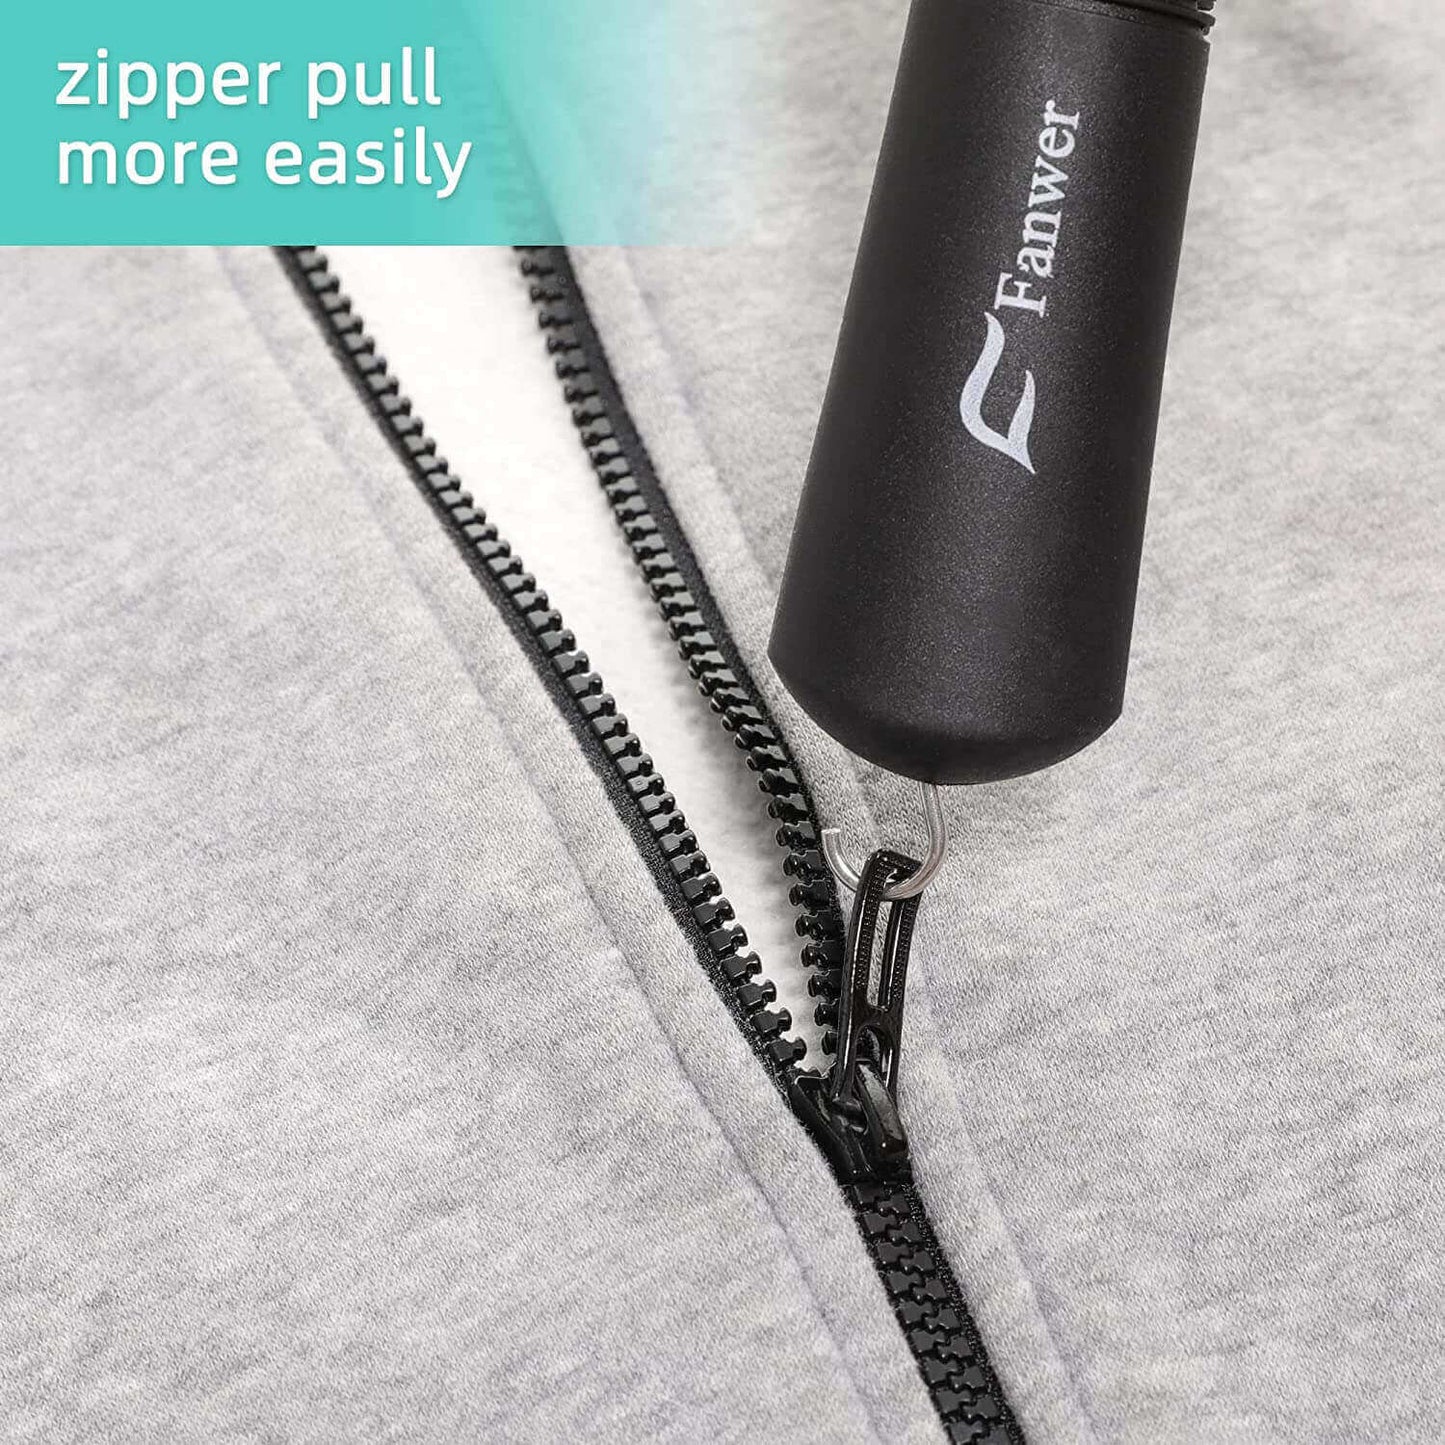 button aid for dressing, button helper with zipper hook, the zipper hook